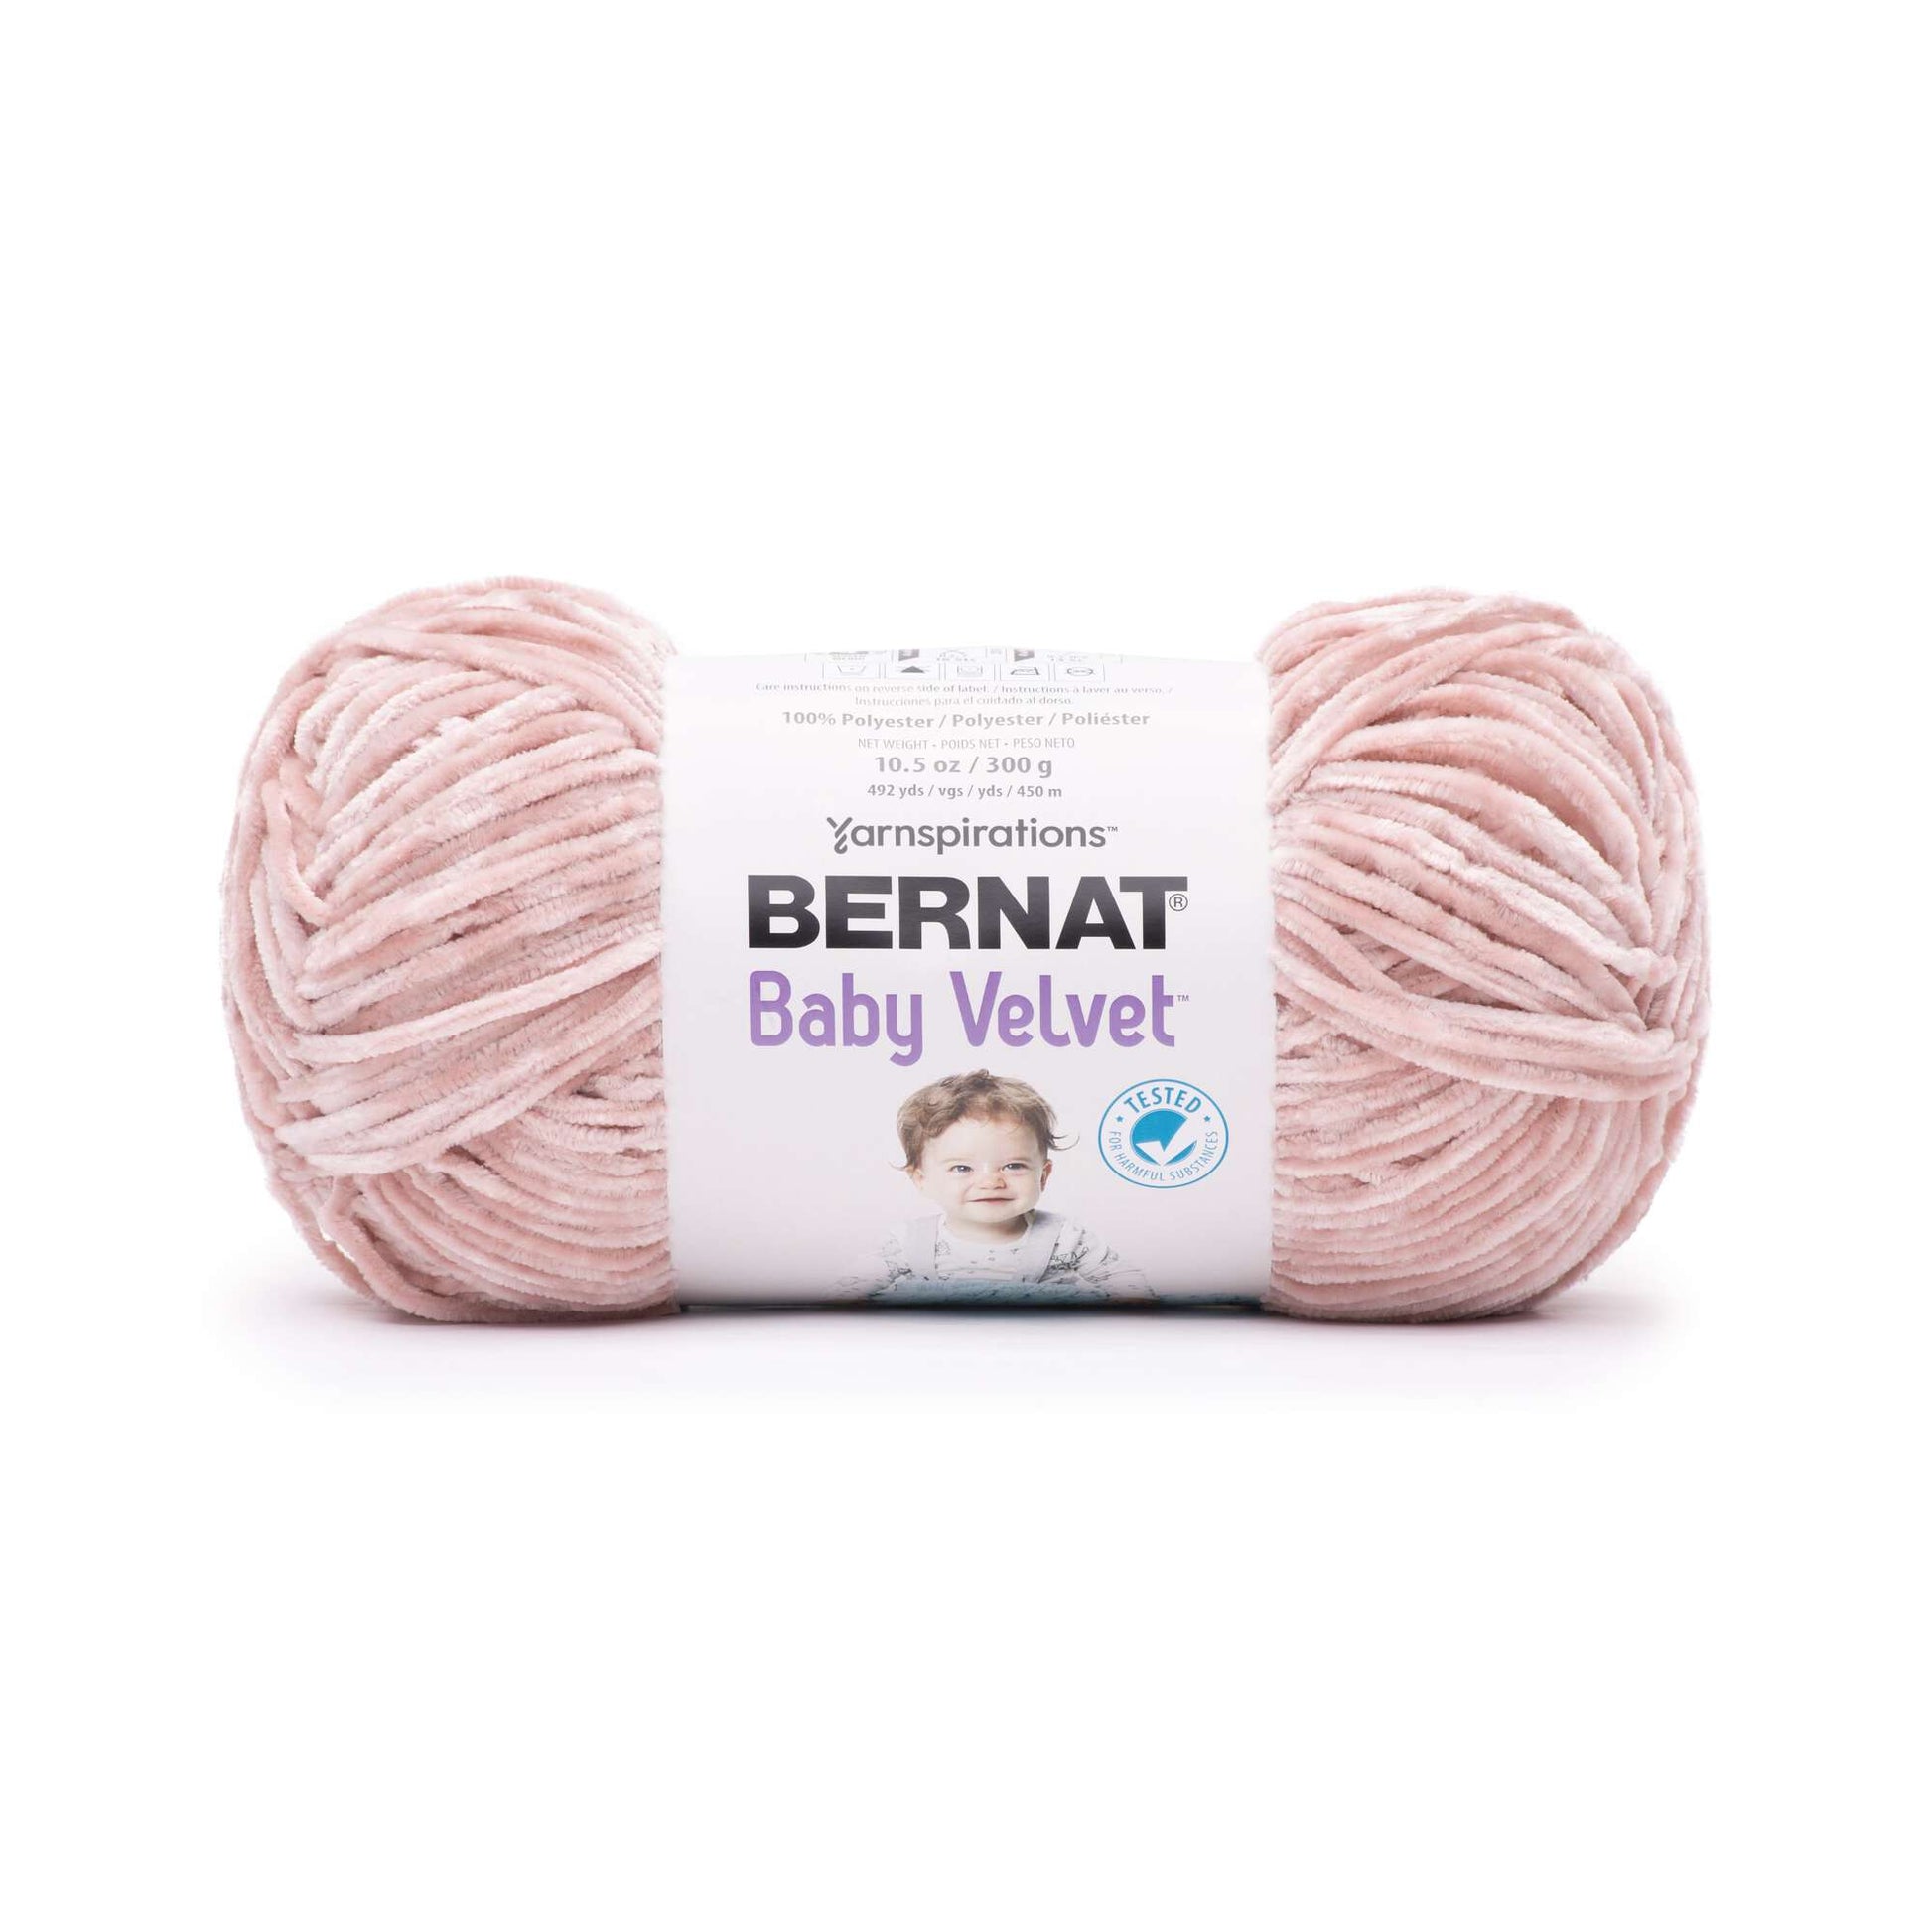 Bernat Velvet Yarn - Discontinued Shades